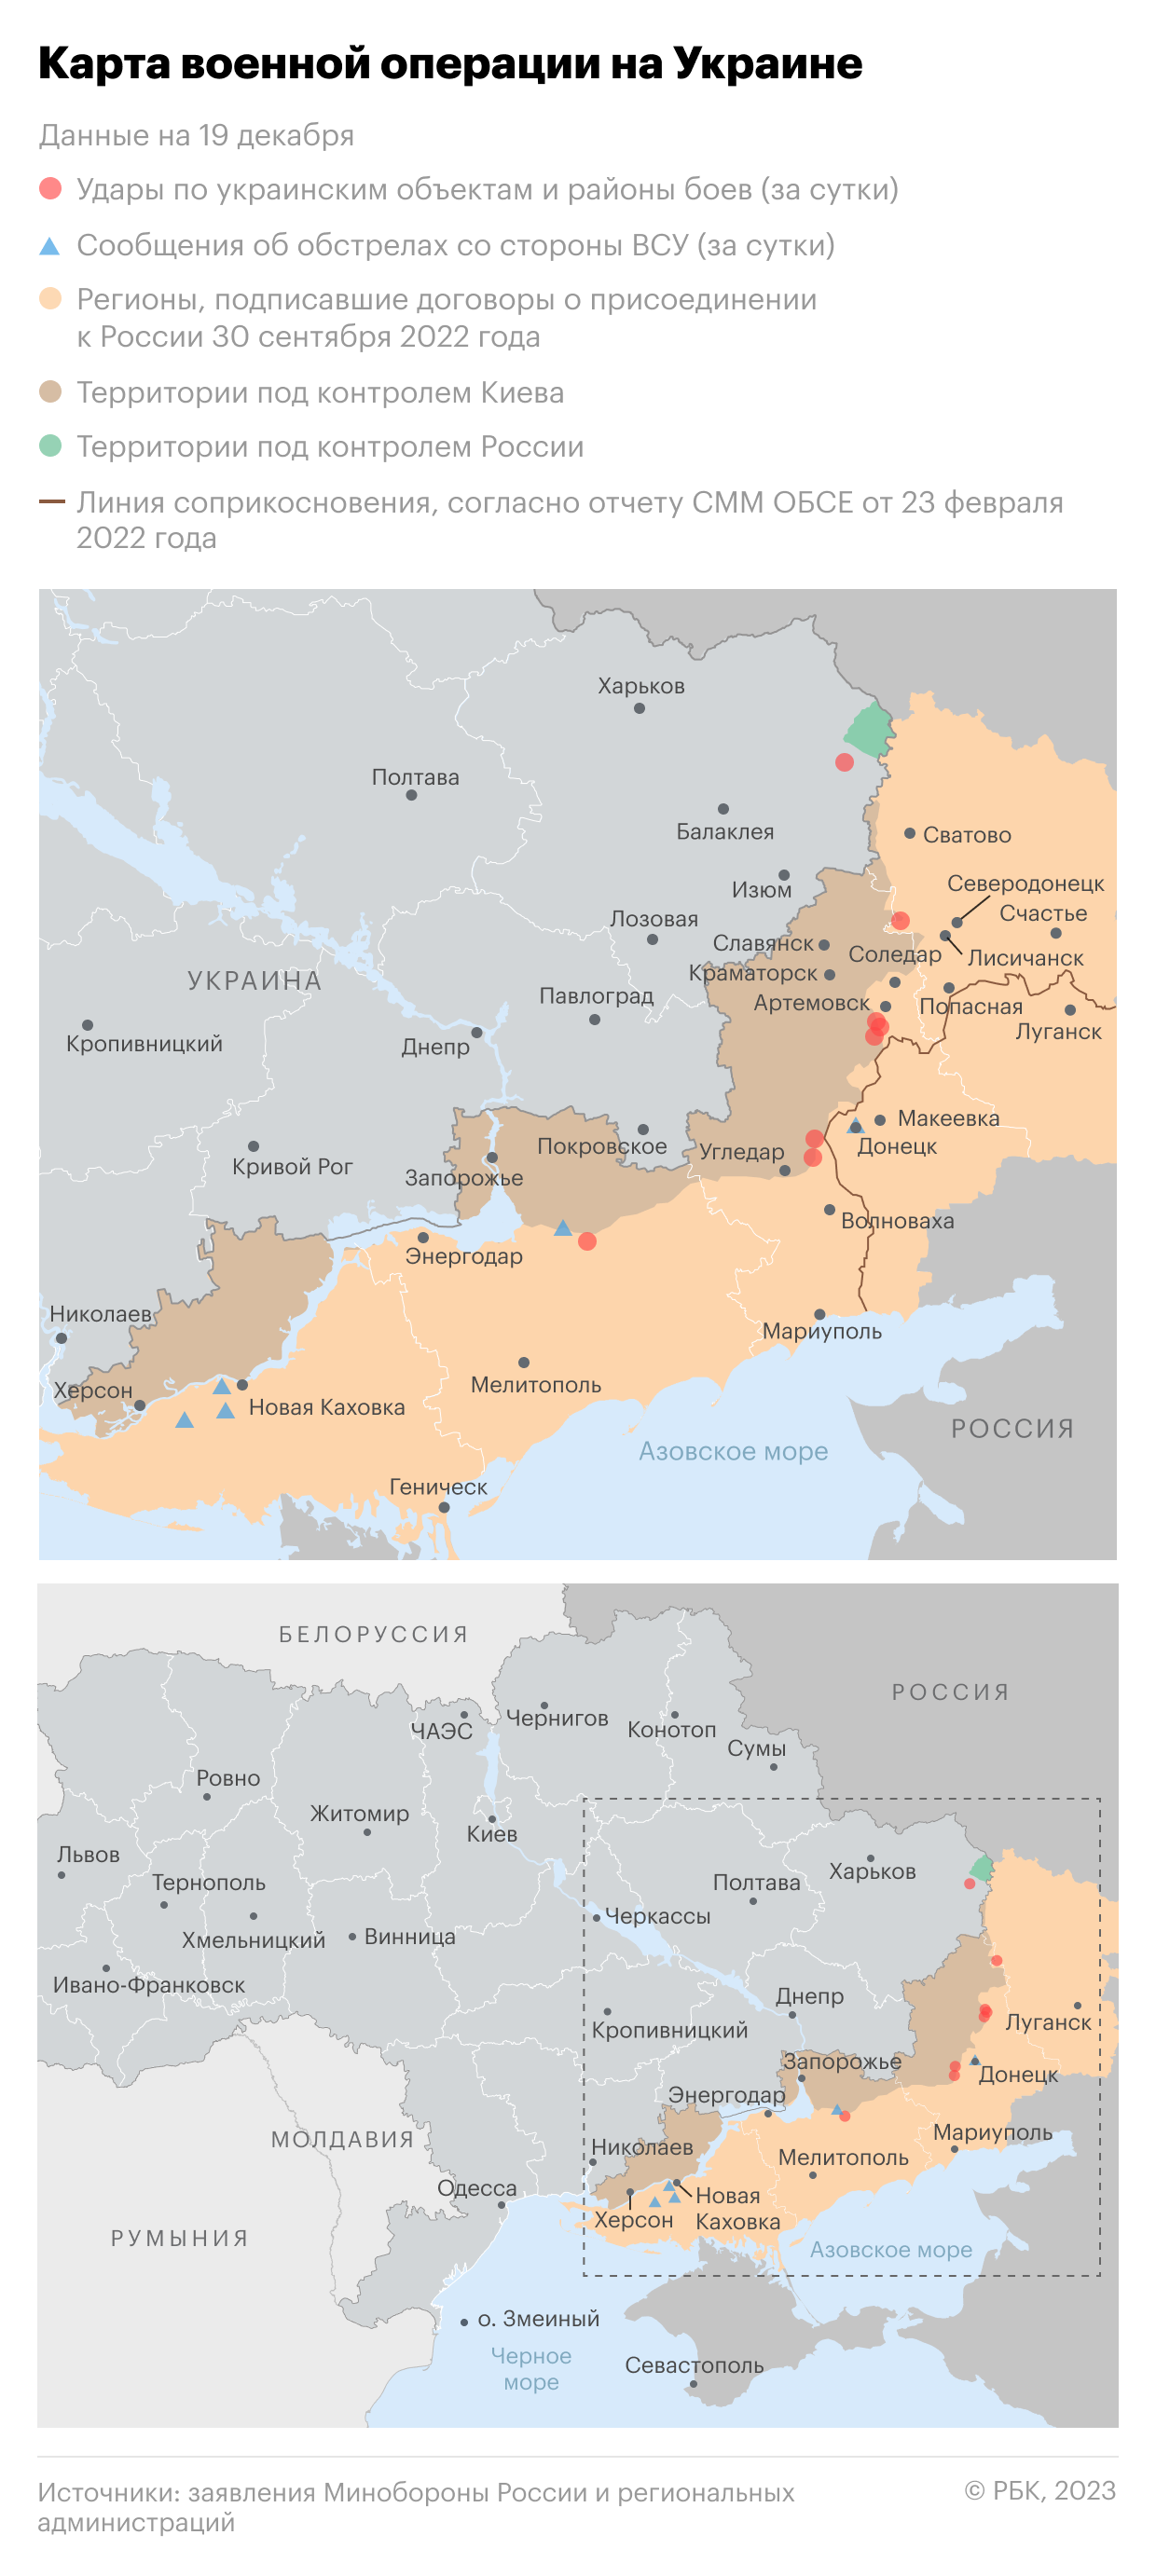 Военная операция на Украине. Карта на 19 декабря